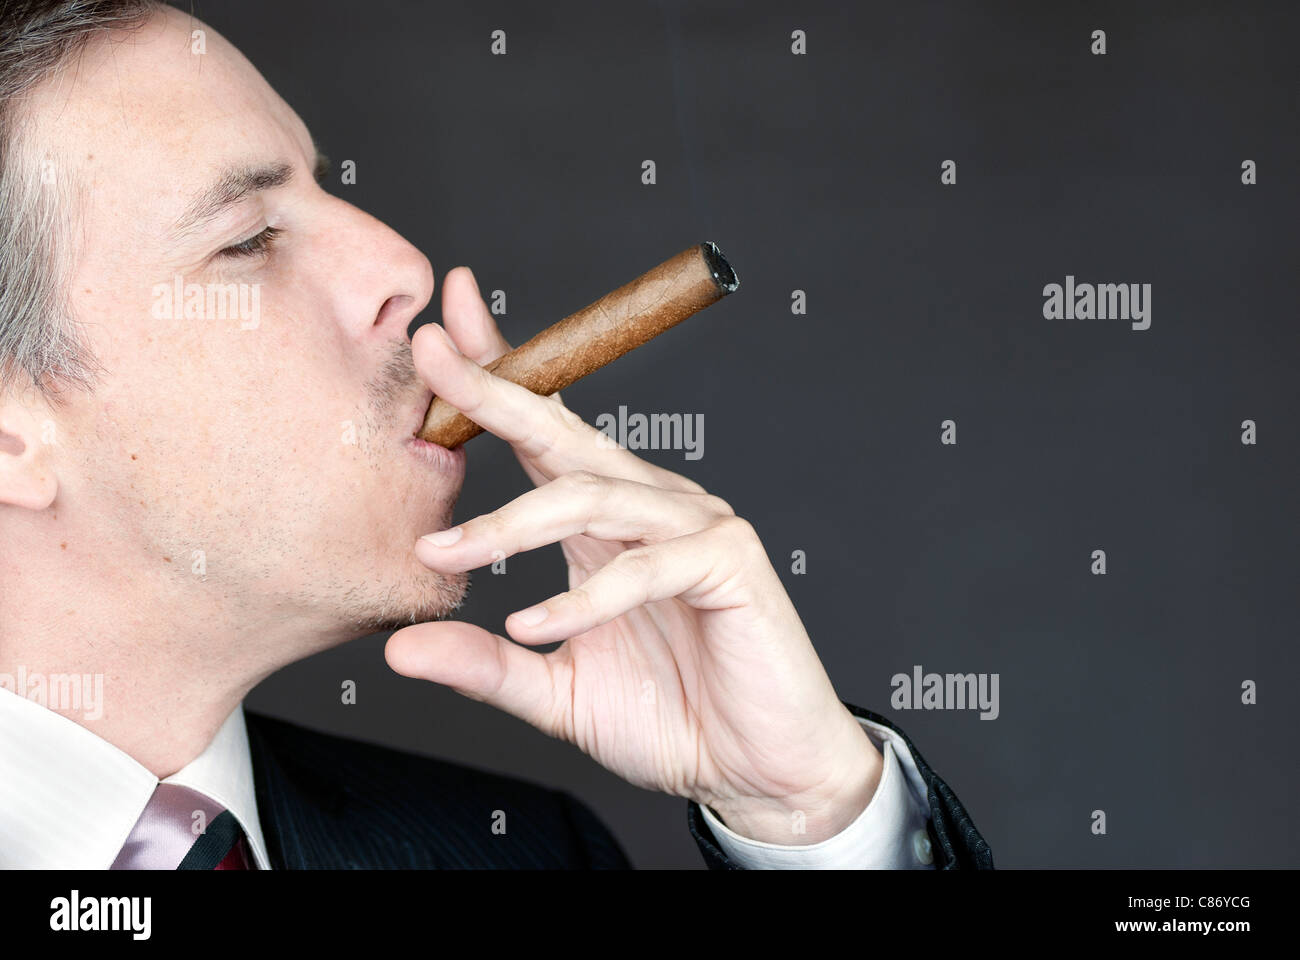 Close-up of a businessman smoking a cigar appreciatively. Stock Photo